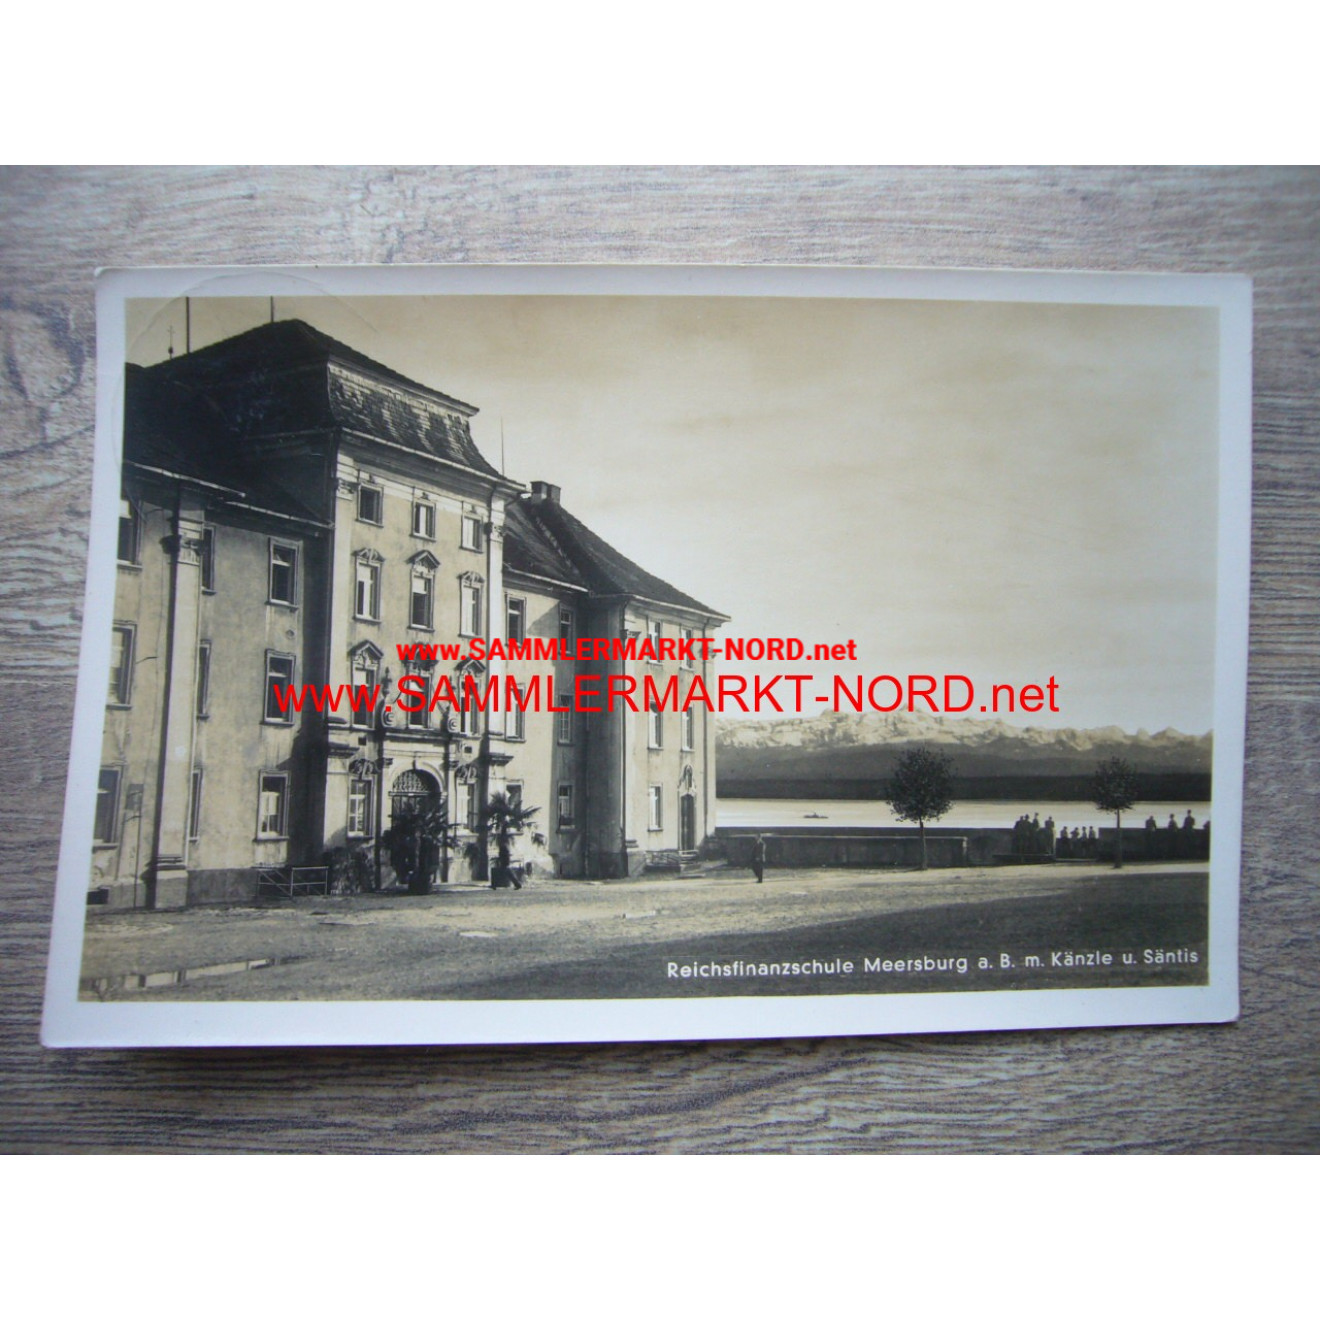 Reichsfinanzschule Meersburg (RfV) - postcard